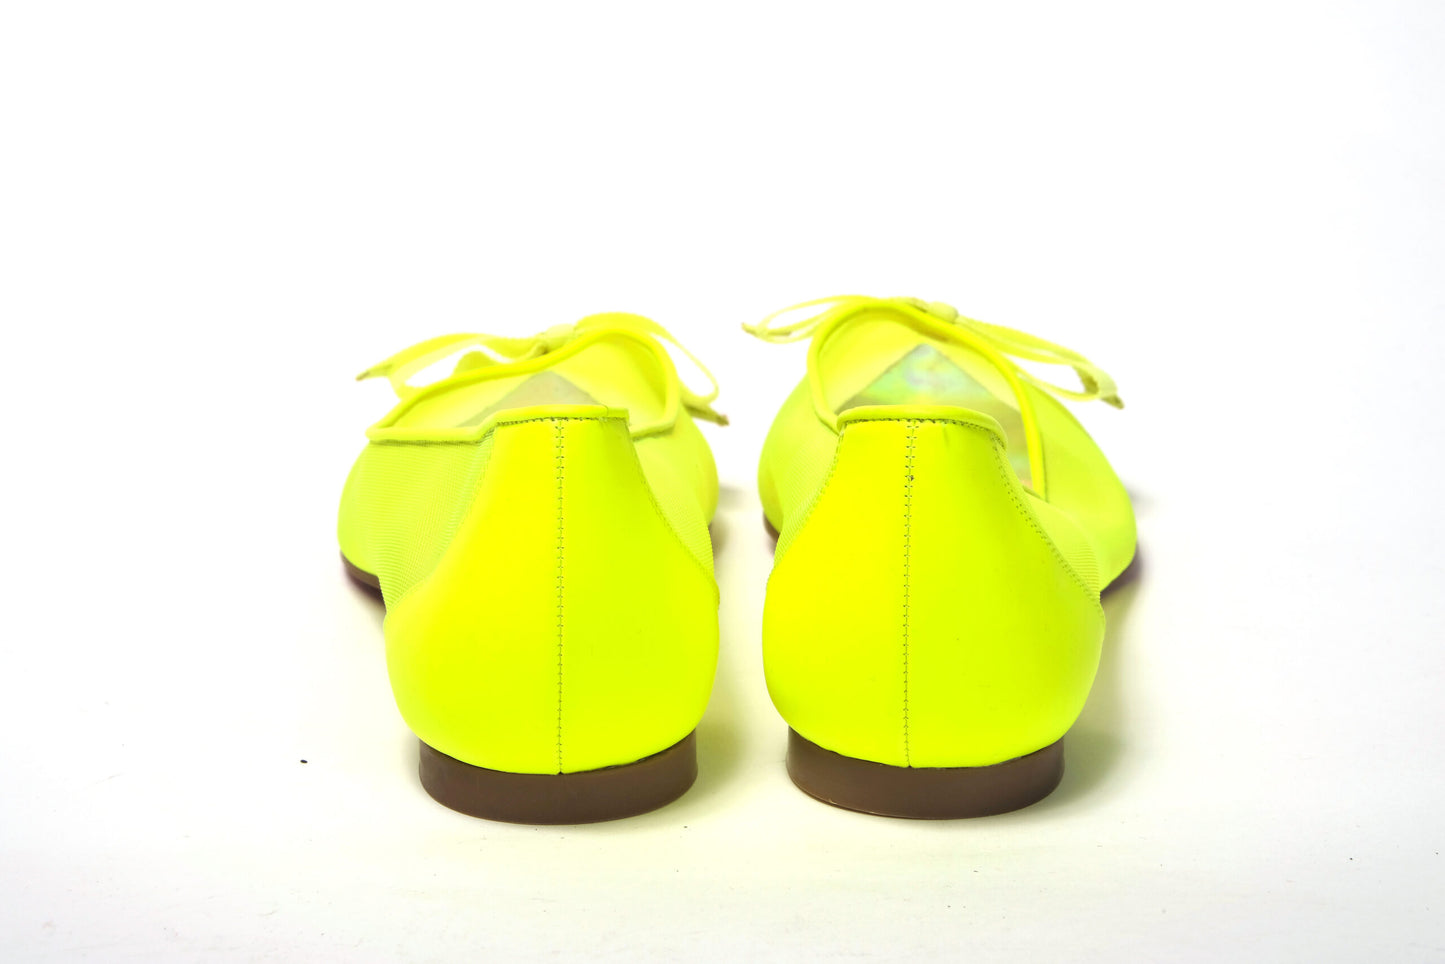 حذاء كريستيان لوبوتان فلورو أصفر مسطح بمقدمة مدببة